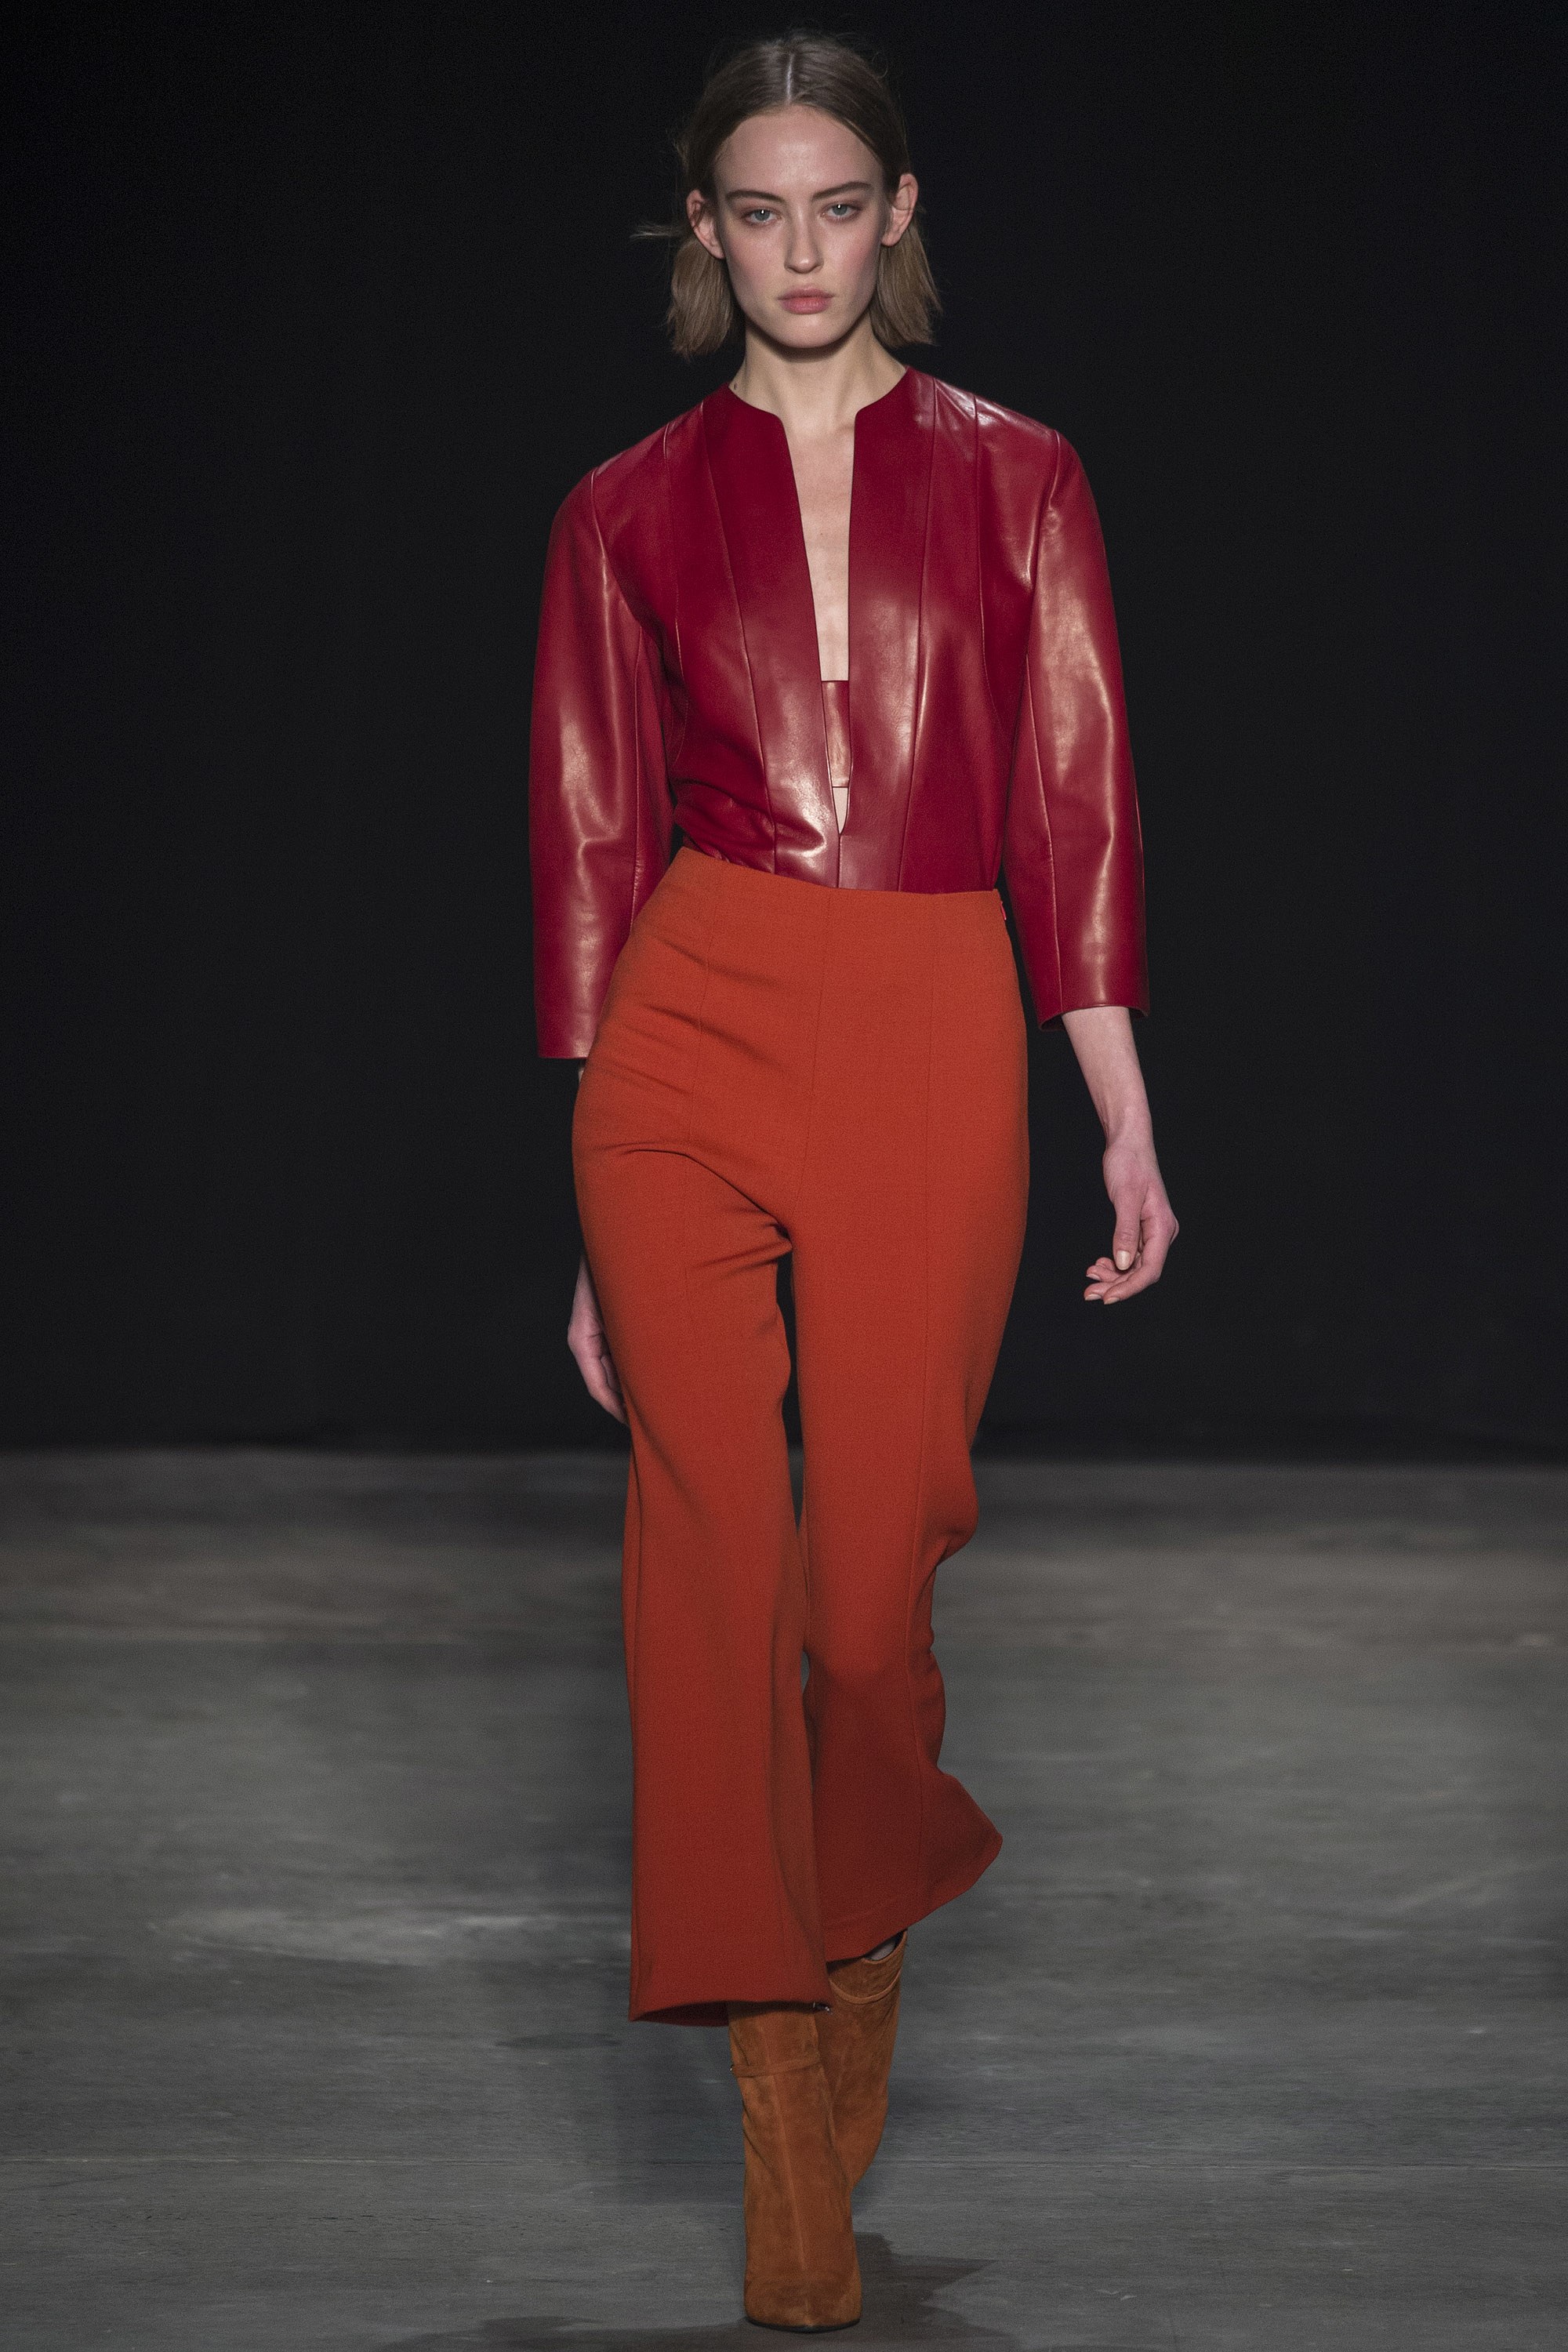 عرض أزياء Narciso Rodriguez لخريف 2017، خلال أسبوع الموضة في نيويورك